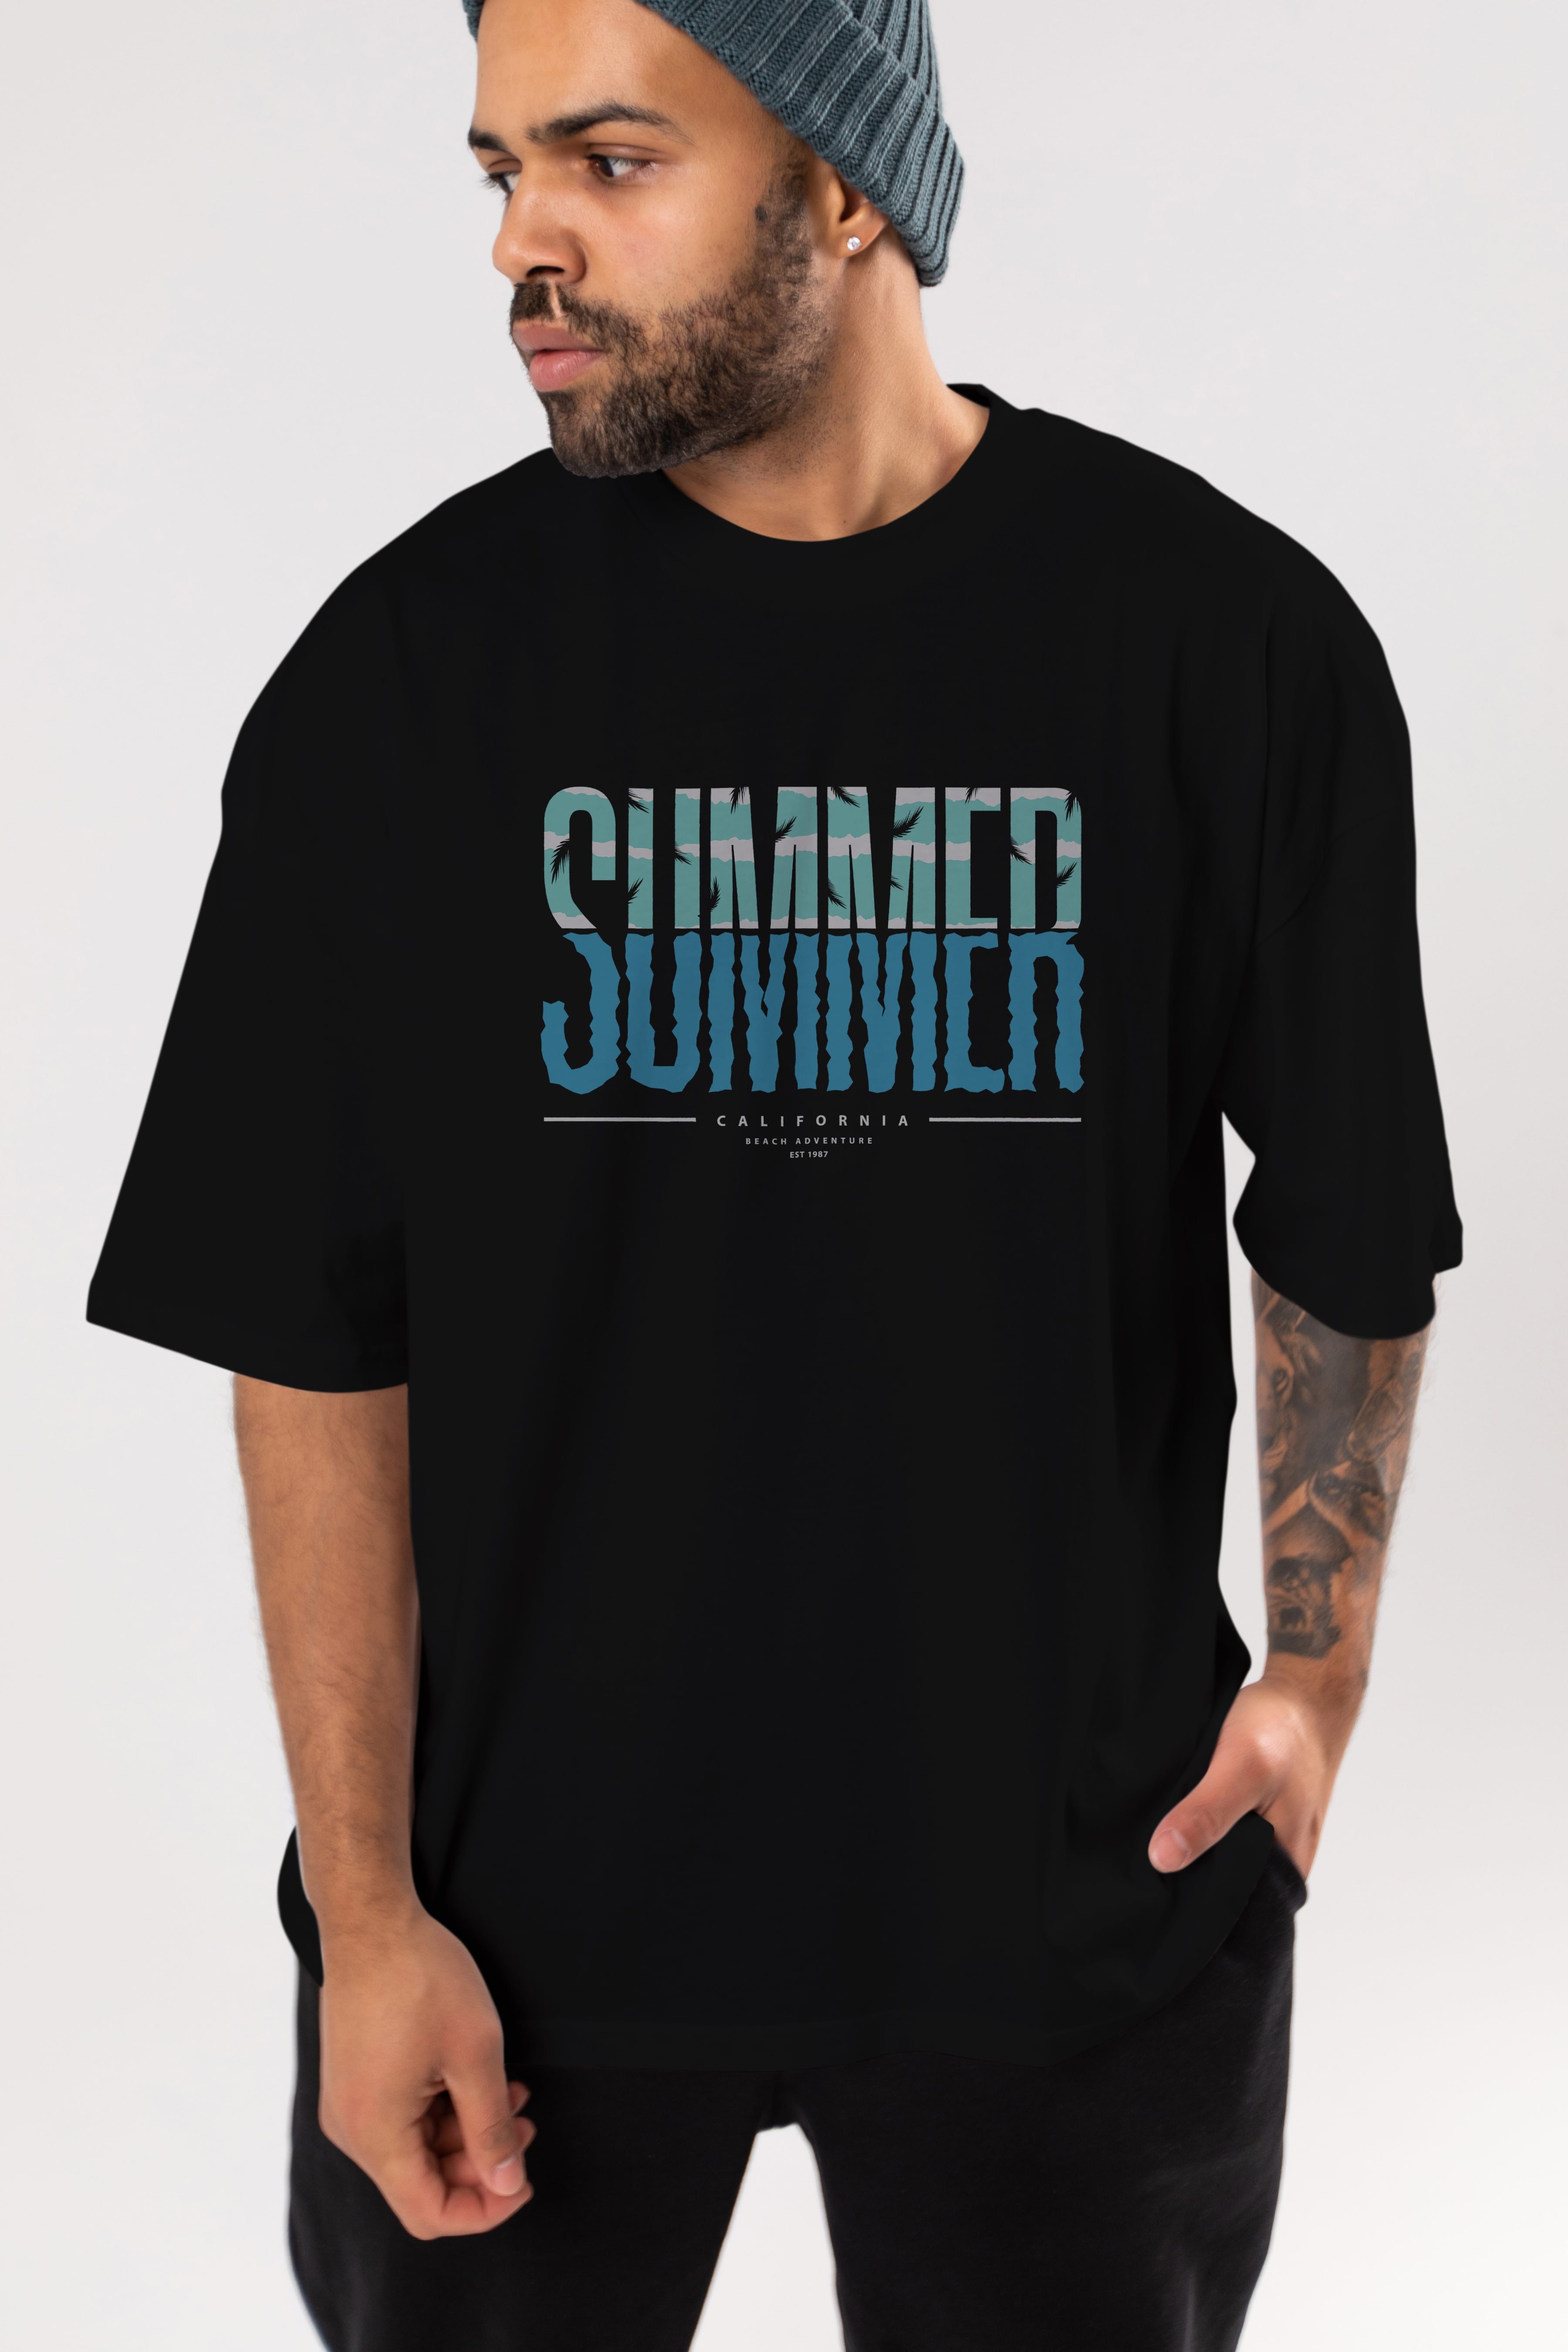 Summer California Ön Baskılı Oversize t-shirt Erkek Kadın Unisex